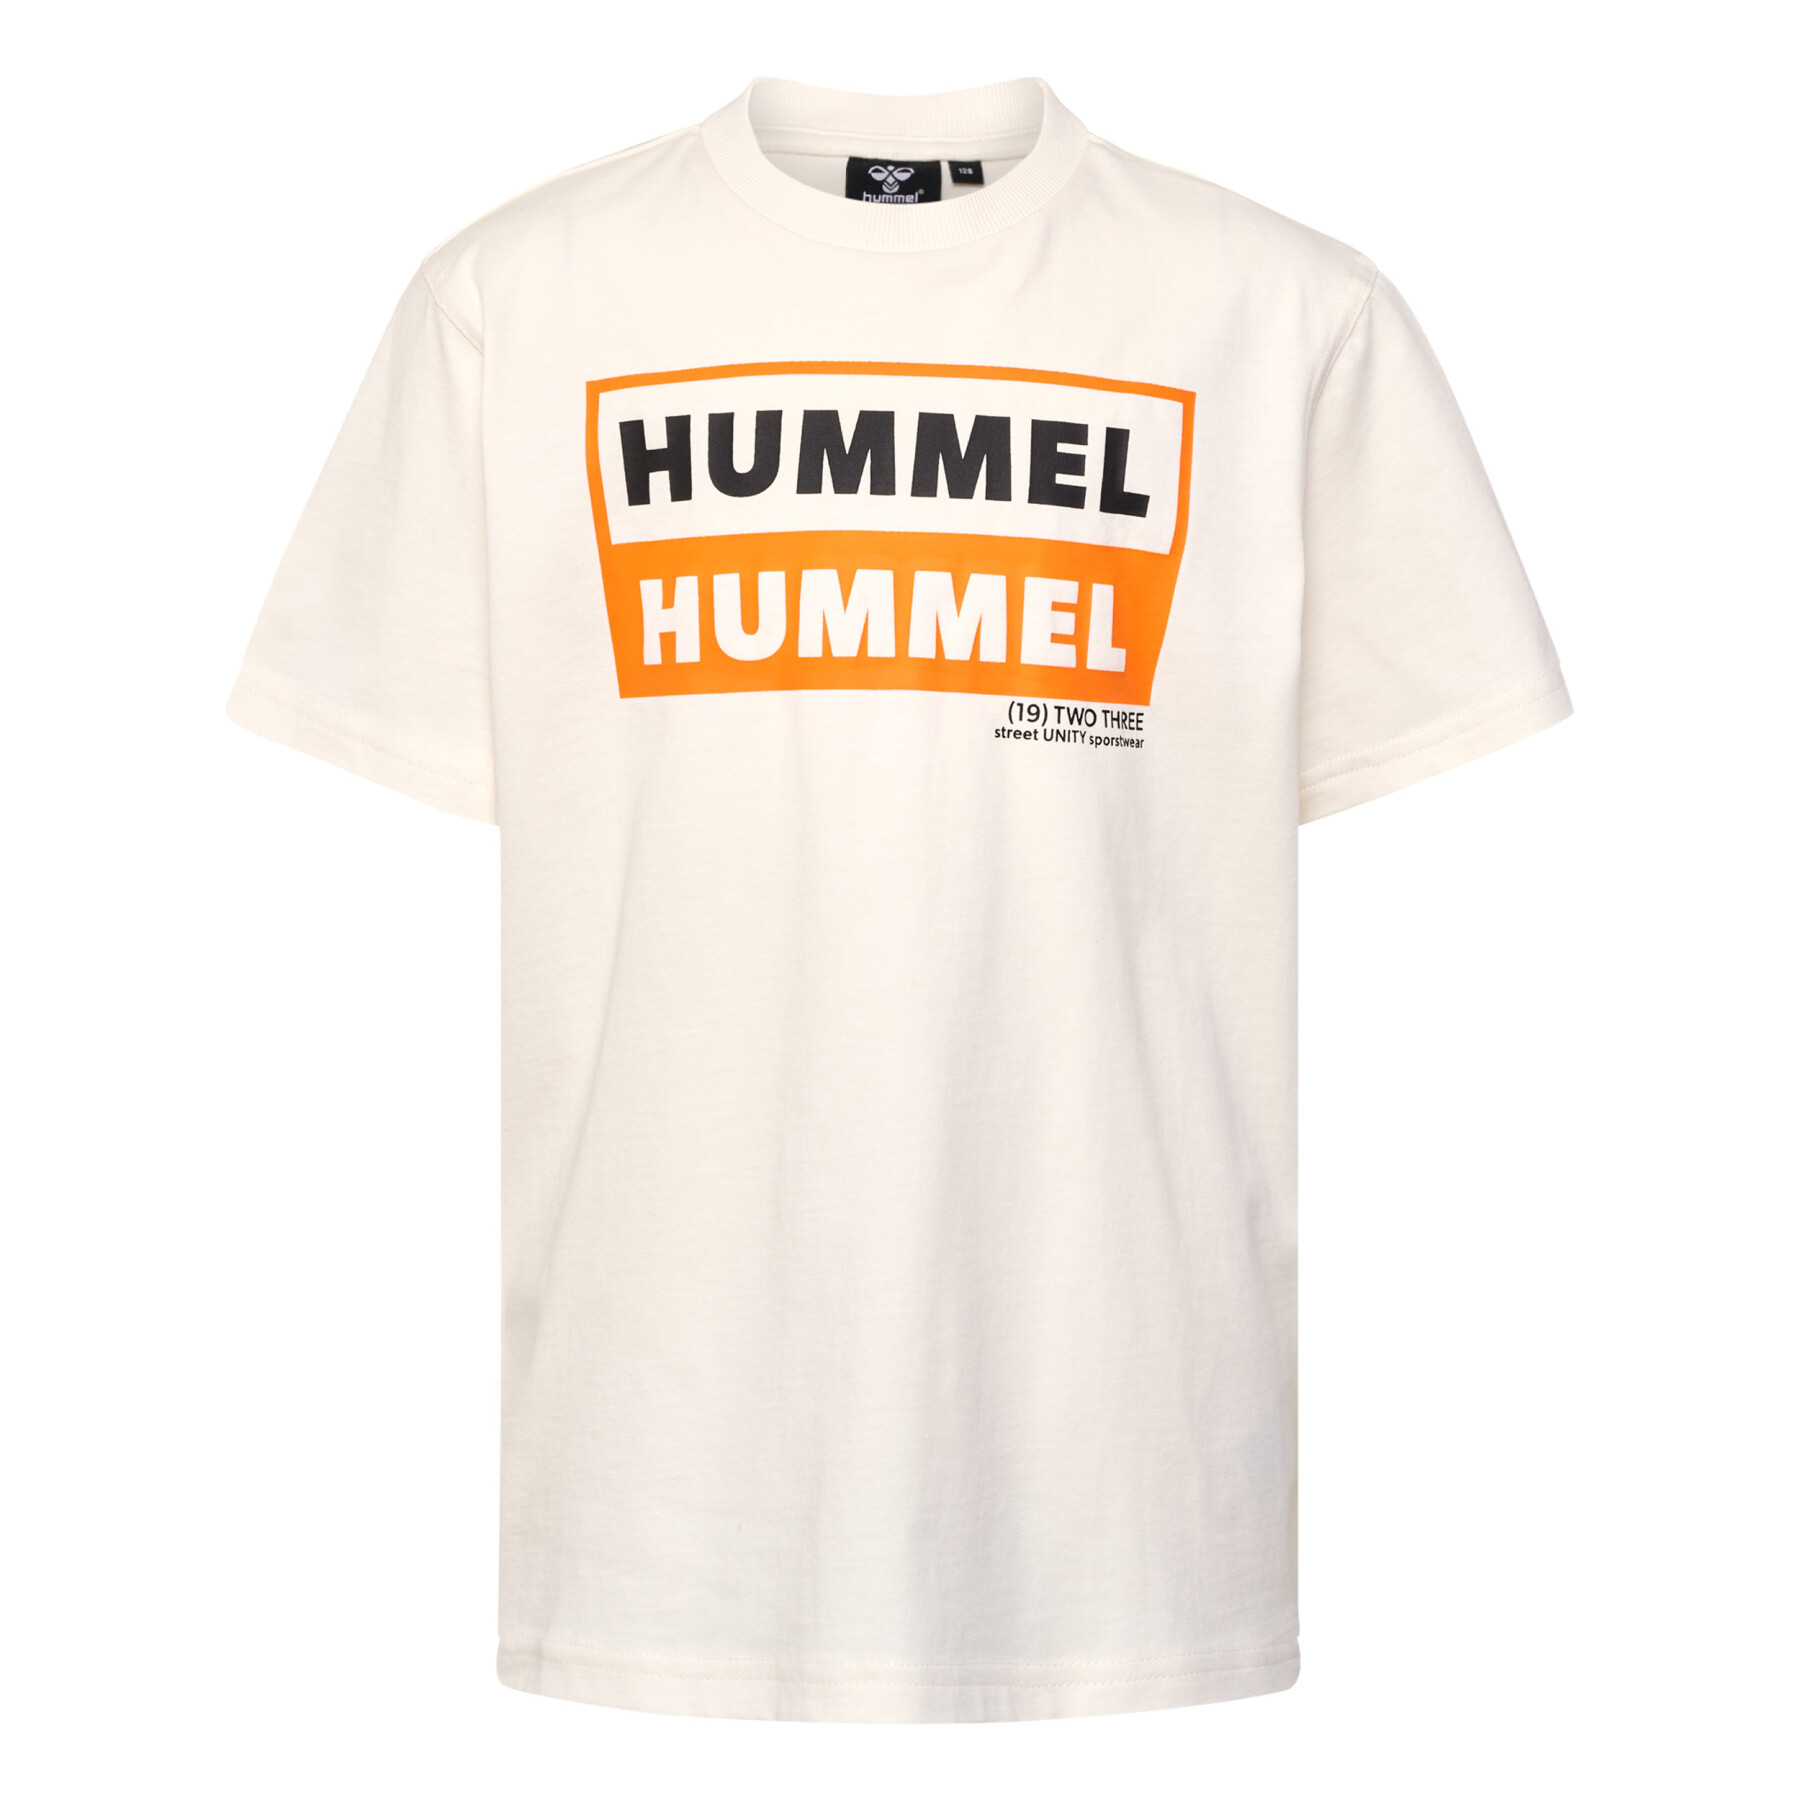 Kinder-T-shirt Hummel Two